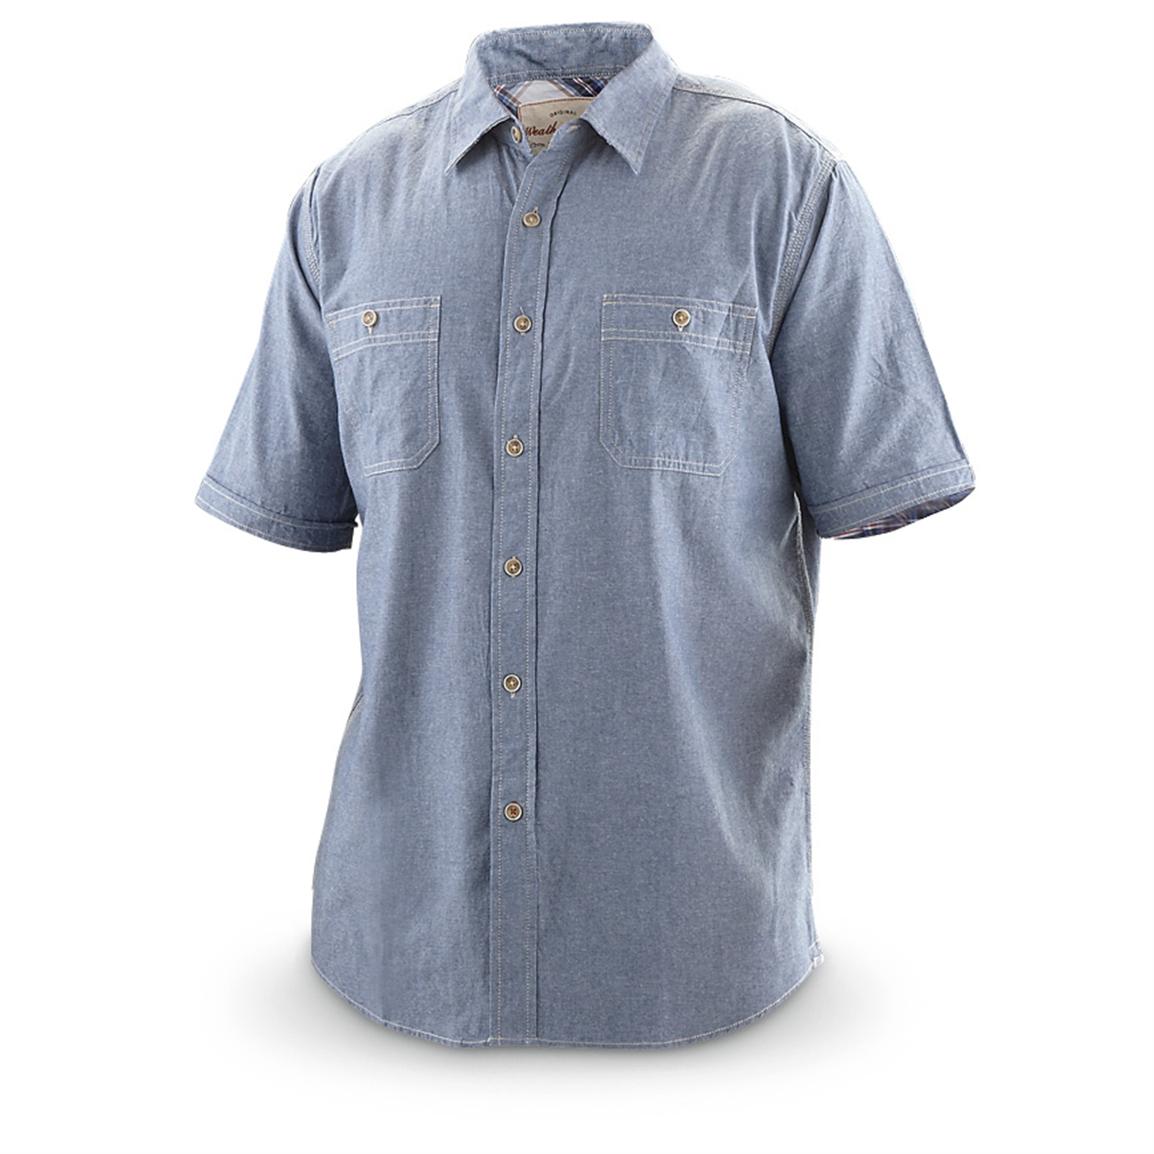 Weatherproof Vintage Short-sleeved Chambray Shirt - 580198, Shirts at ...